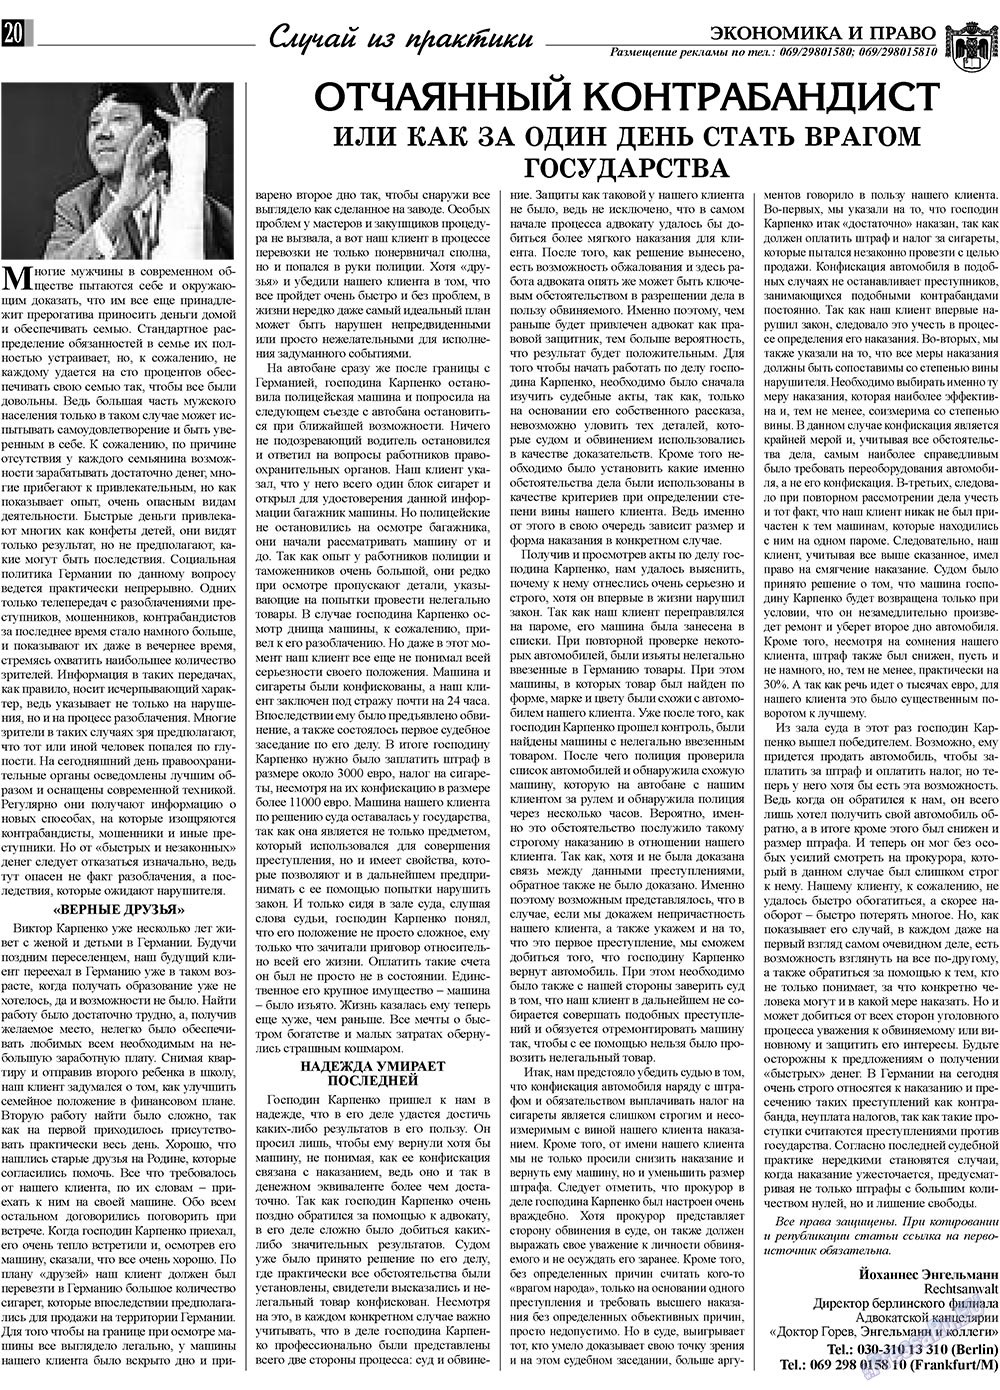 Экономика и право, газета. 2010 №1 стр.20